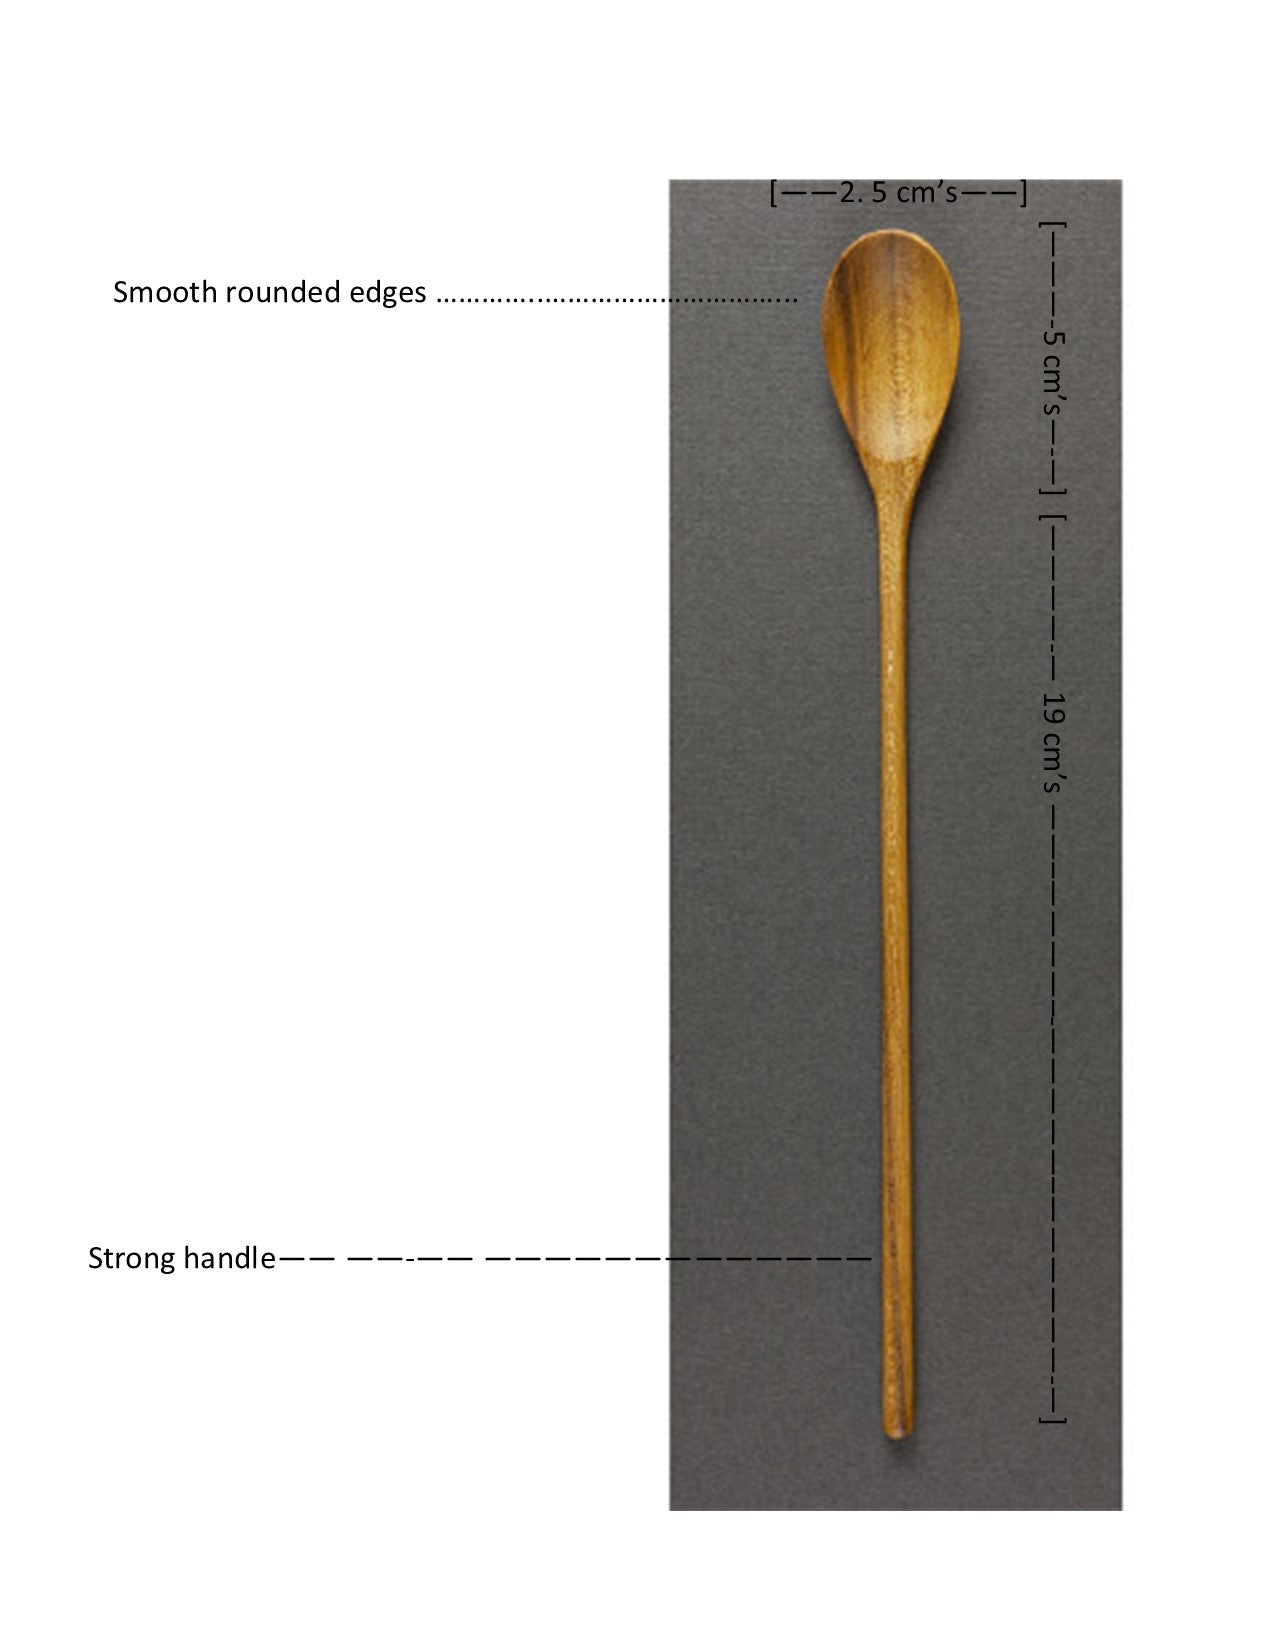 handcrafted long handle parfait spoon measurements